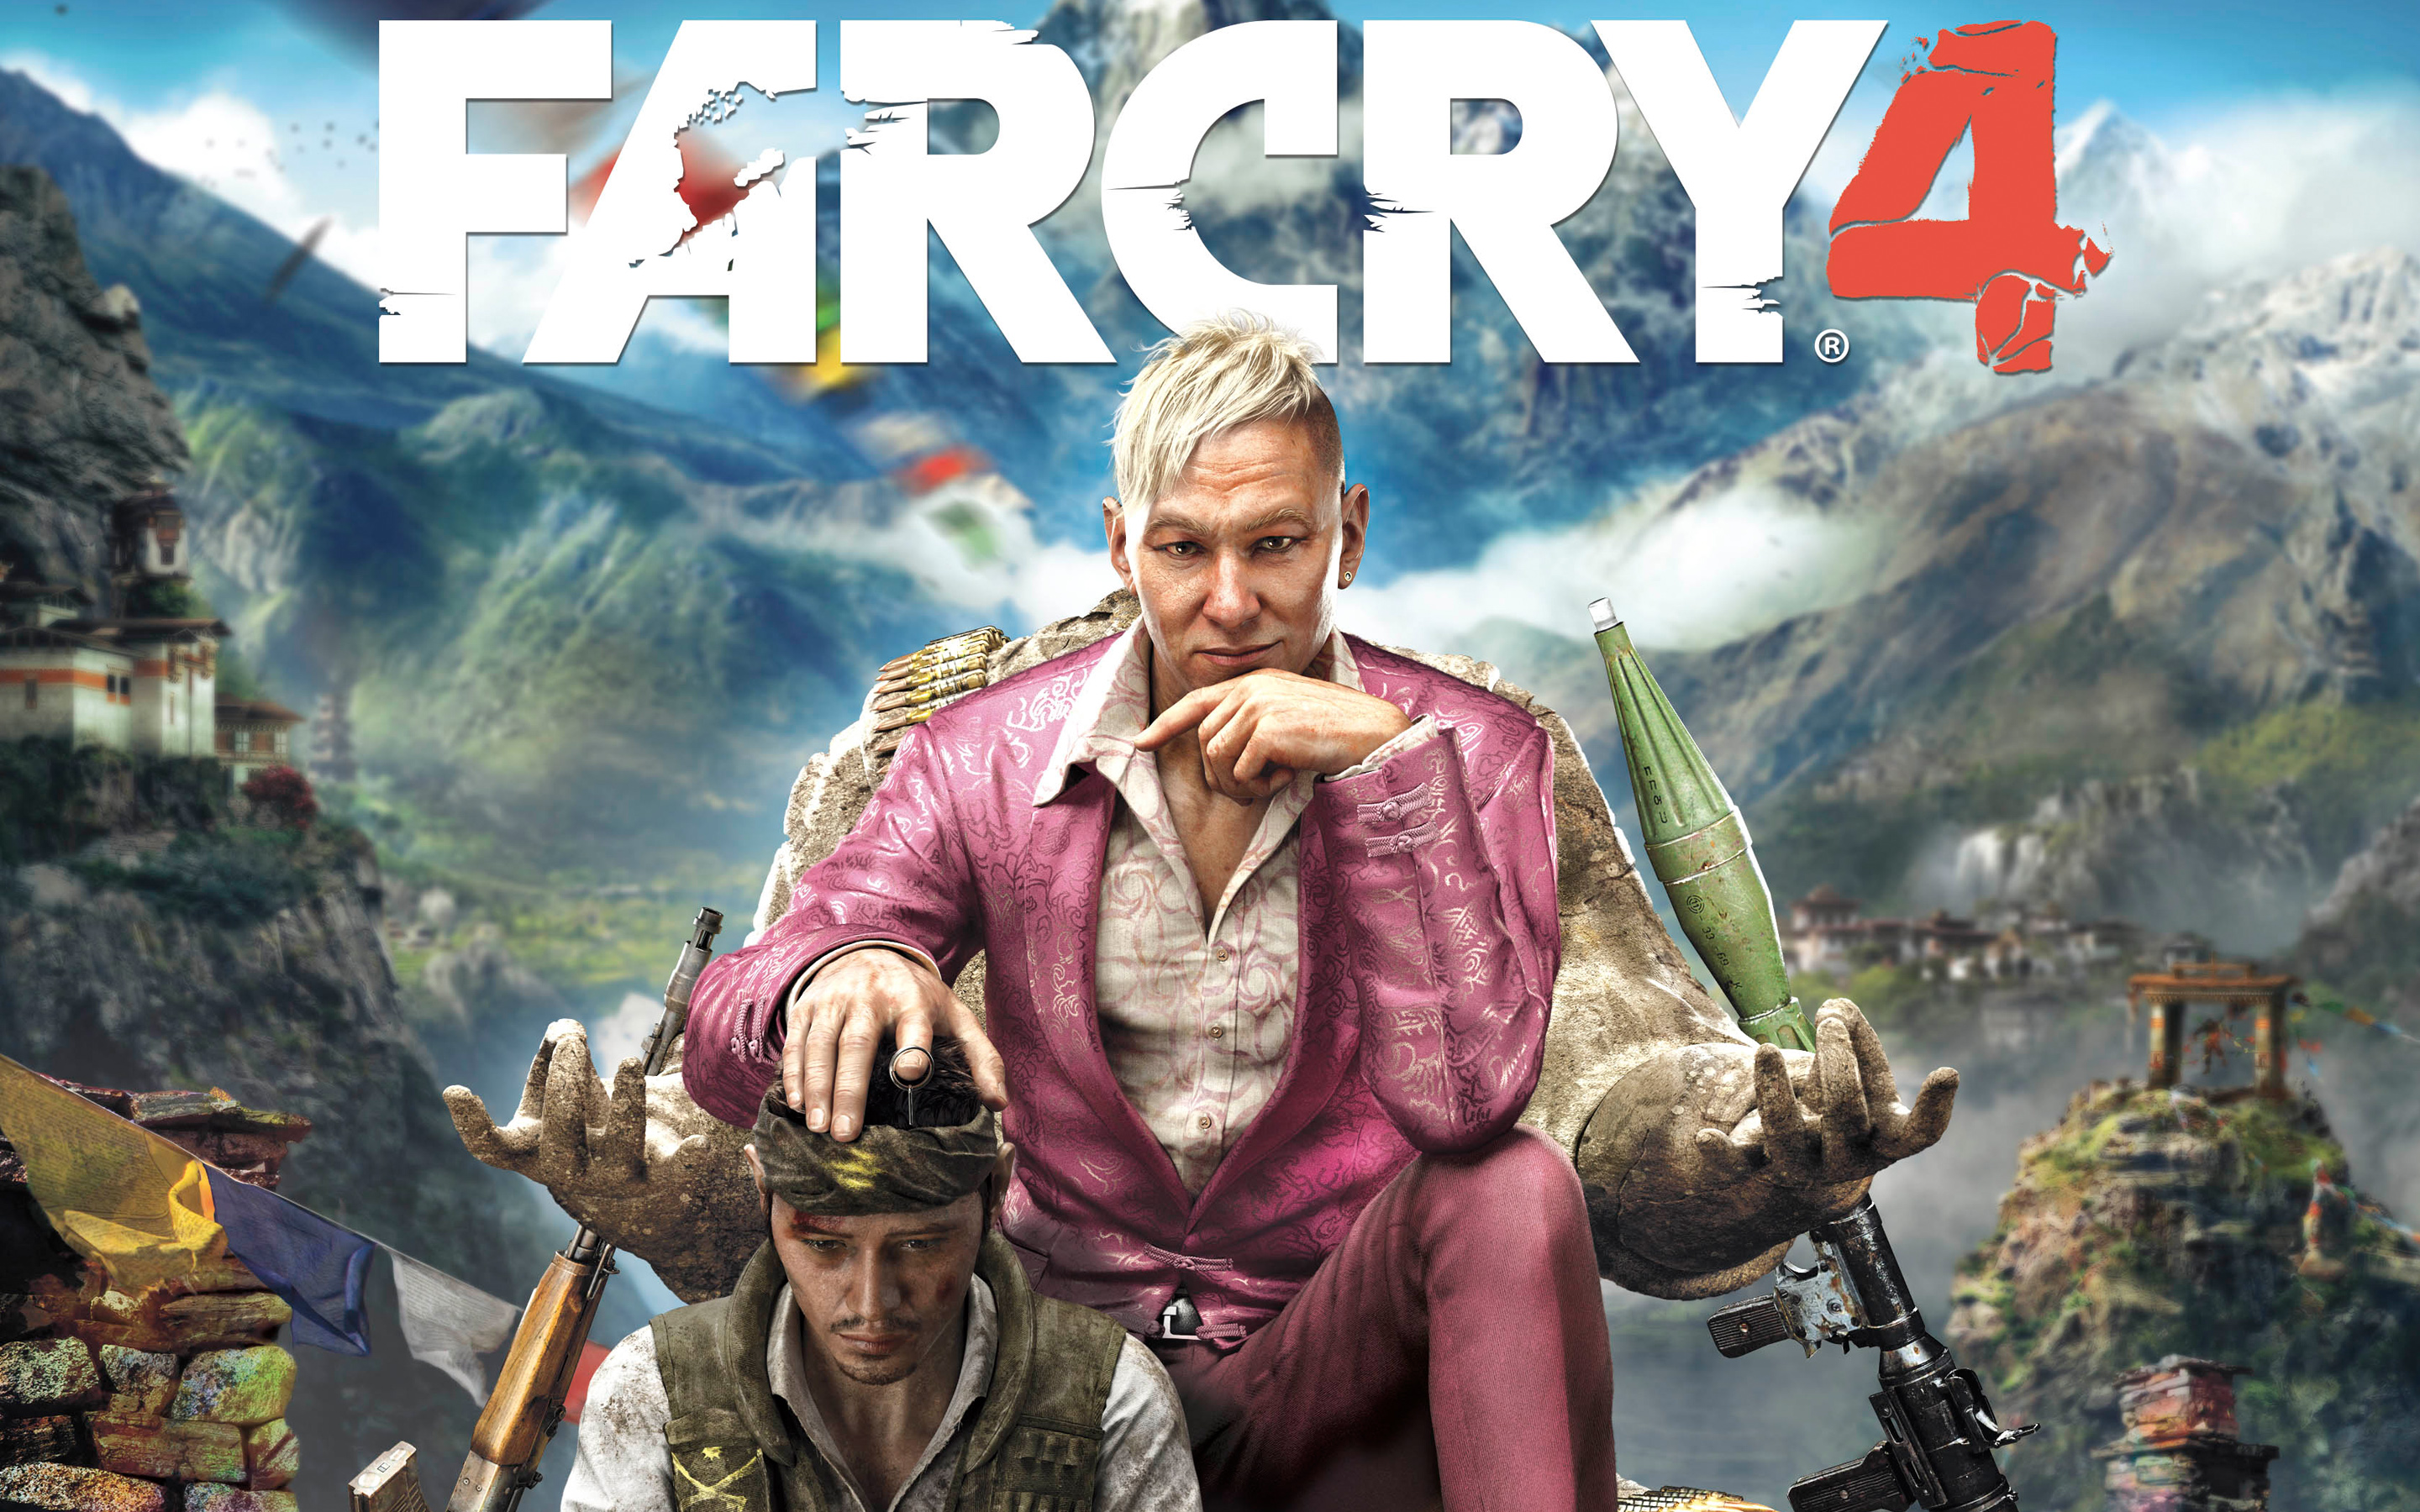 Farcry 4 est prévu pour le 13 janvier 2015 sur PC et Xbox Live